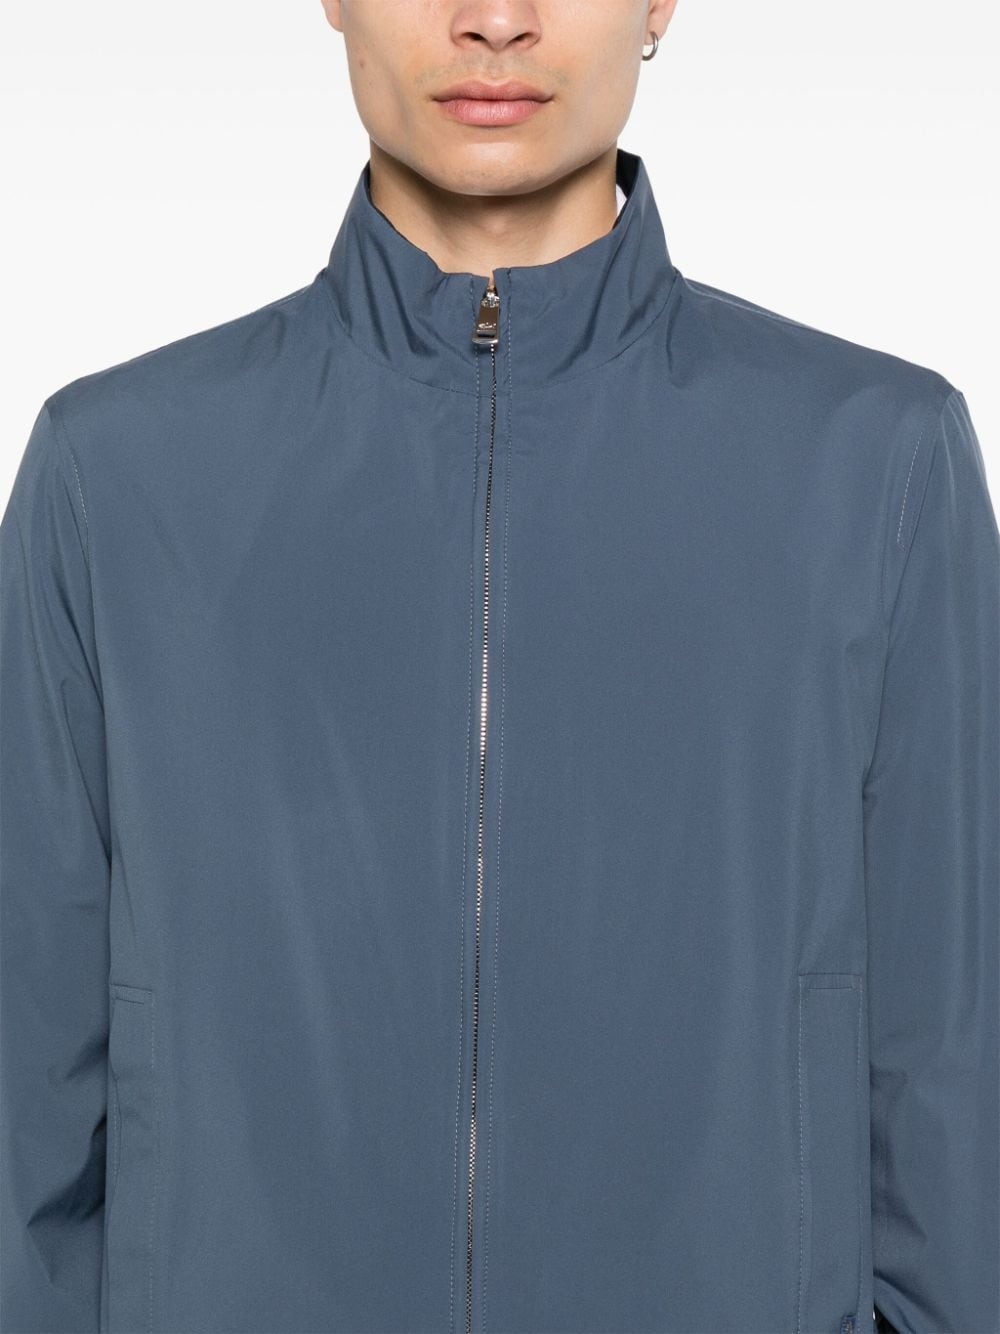 waterproof reversible jacket - 6